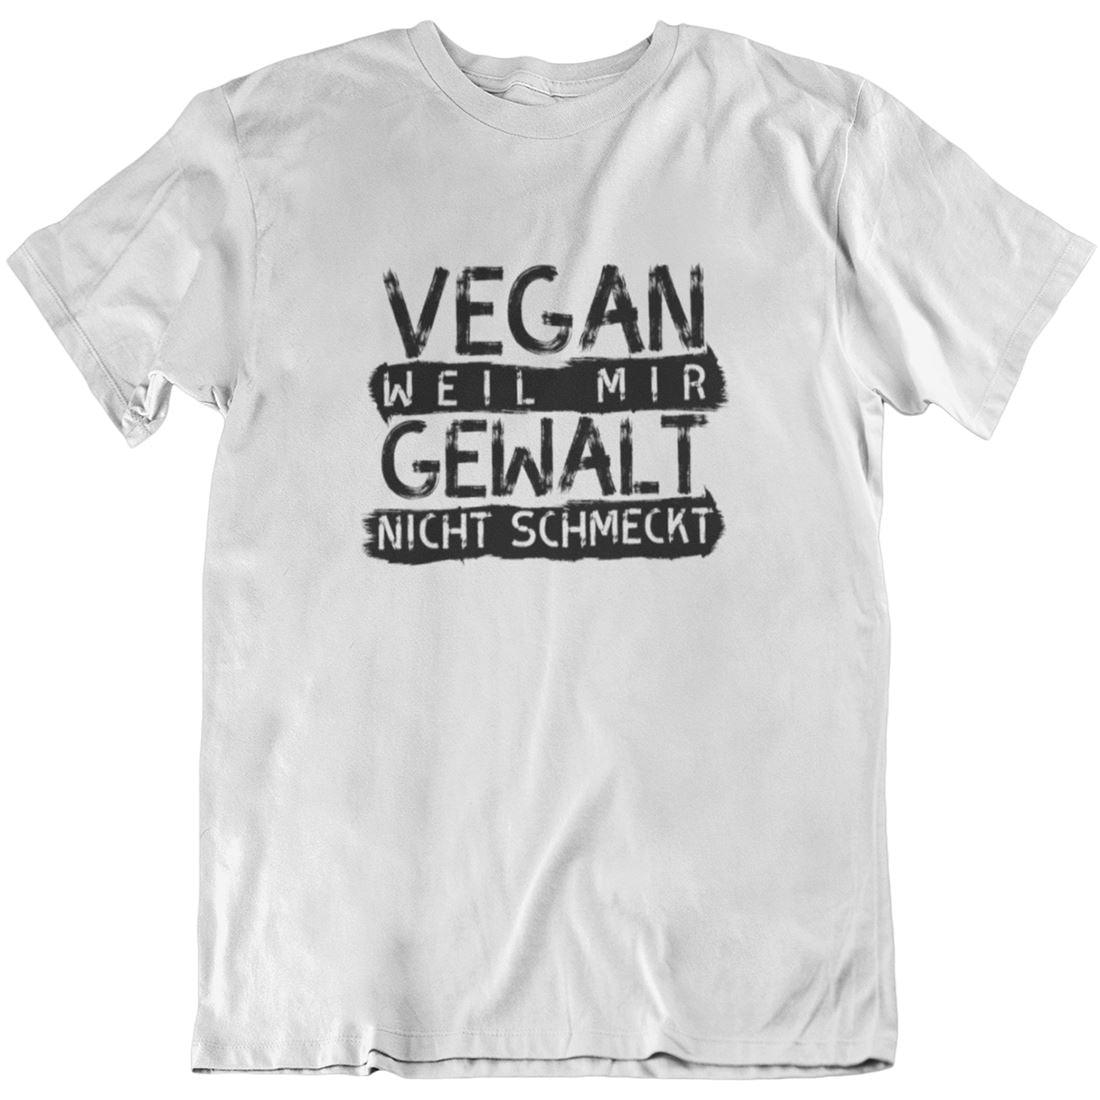 Vegan weil mir Gewalt nicht schmeckt - Unisex Organic Shirt Rocker T-Shirt ST/ST Shirtee Weiß S 